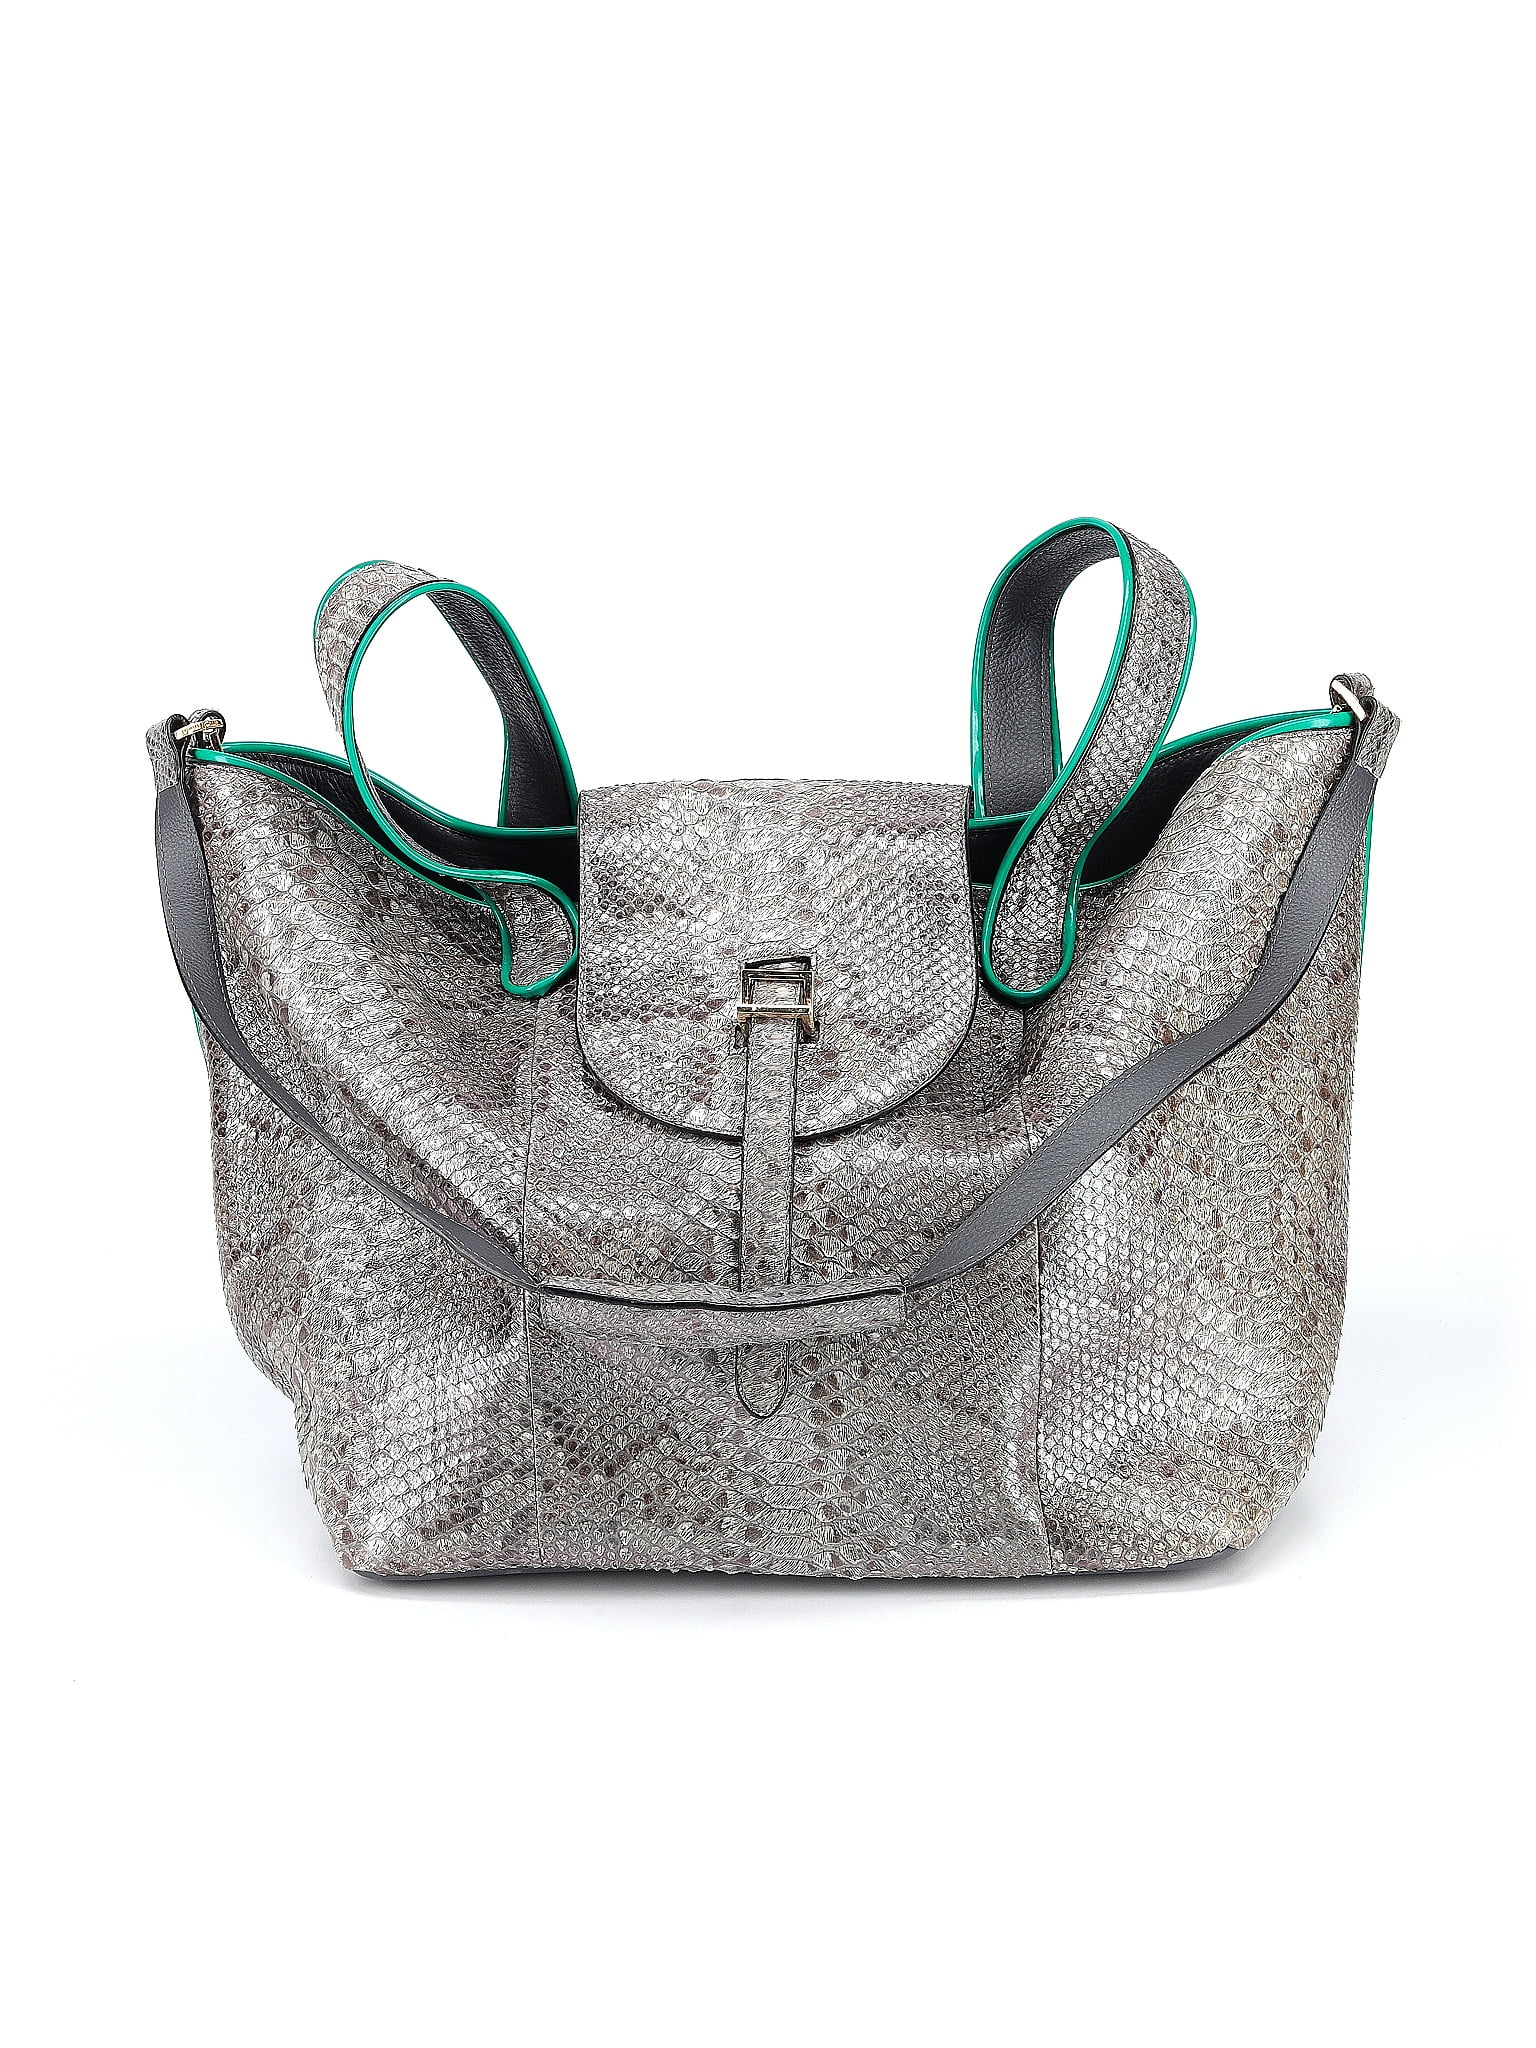 MELI MELO Handbags Meli Melo Leather For Female for Women